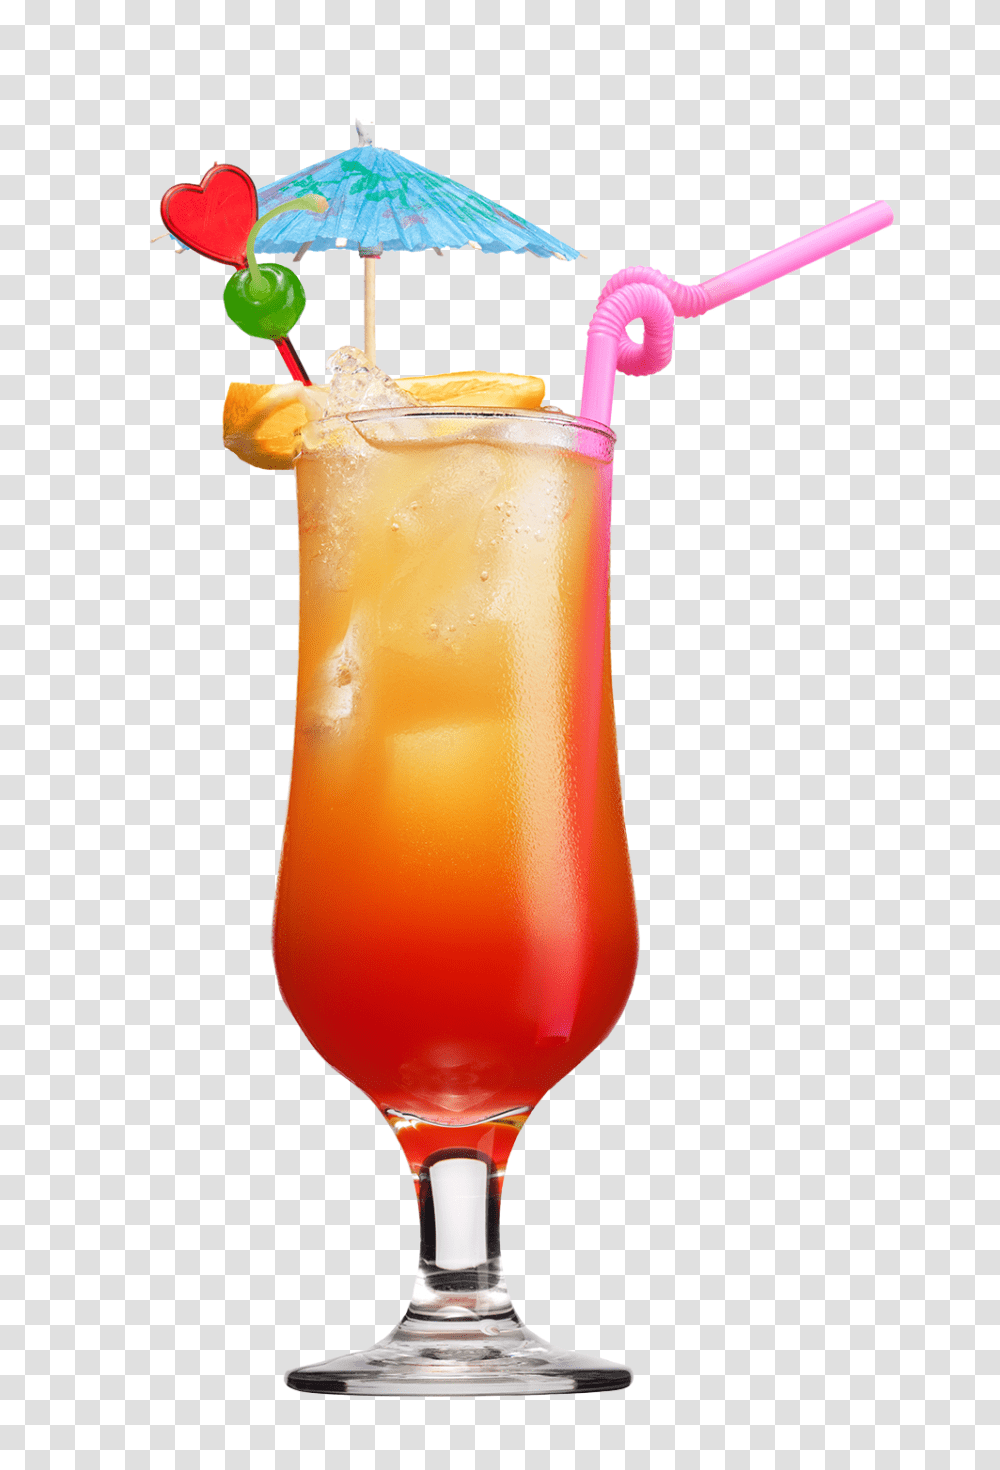 Drinks Drinks Images, Cocktail, Alcohol, Beverage, Juice Transparent Png